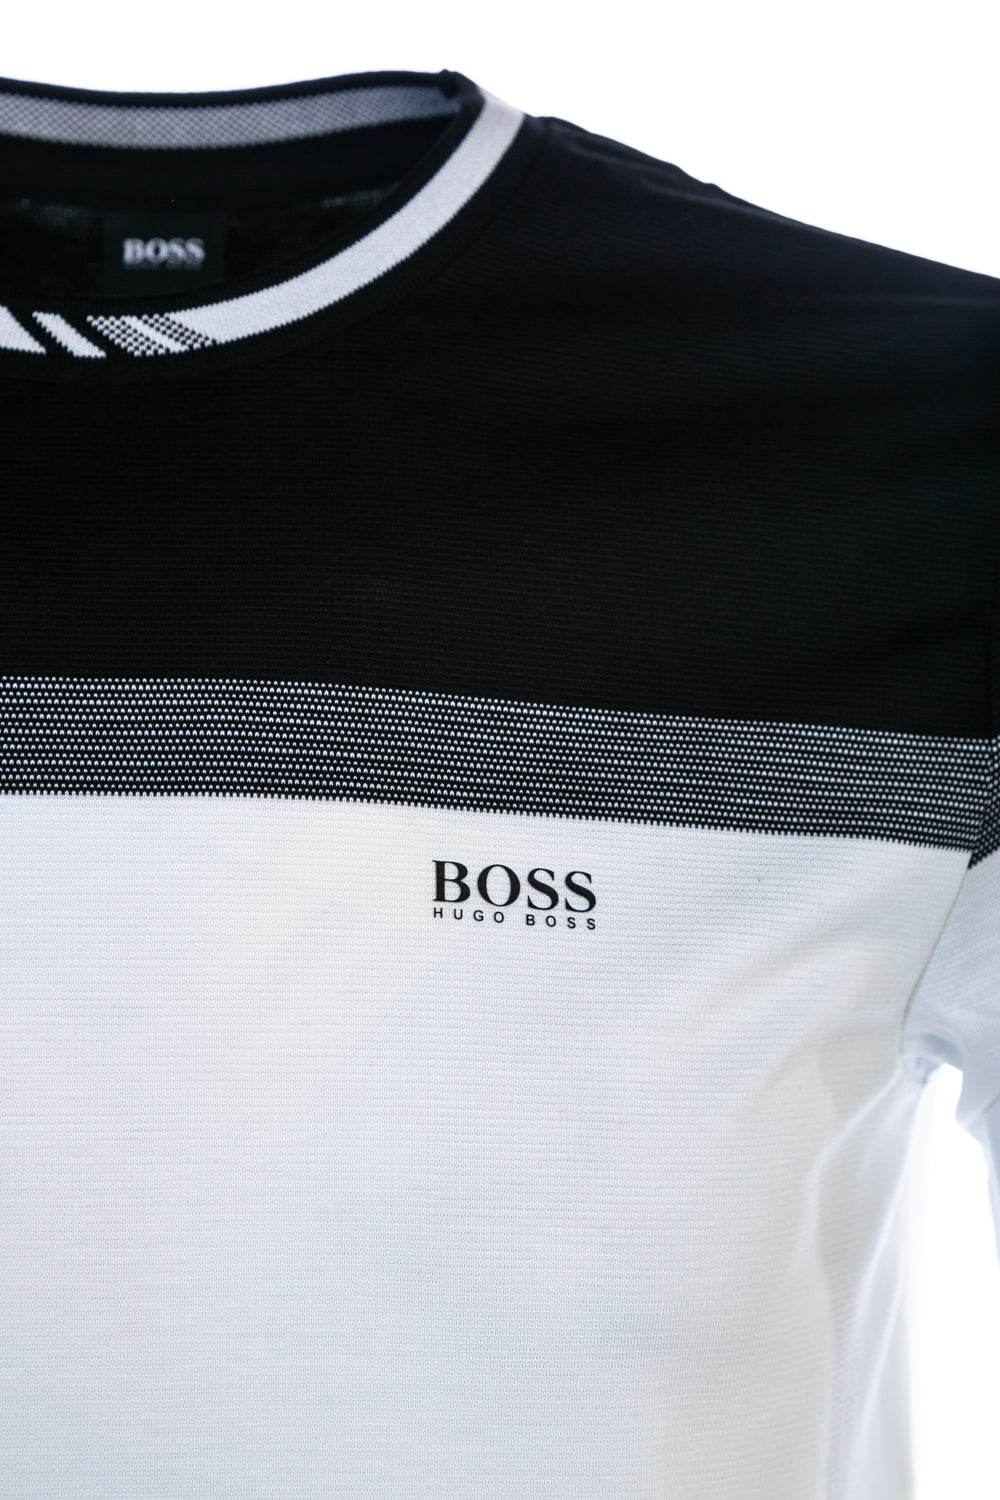 BOSS Tee 8 T Shirt in Black & White